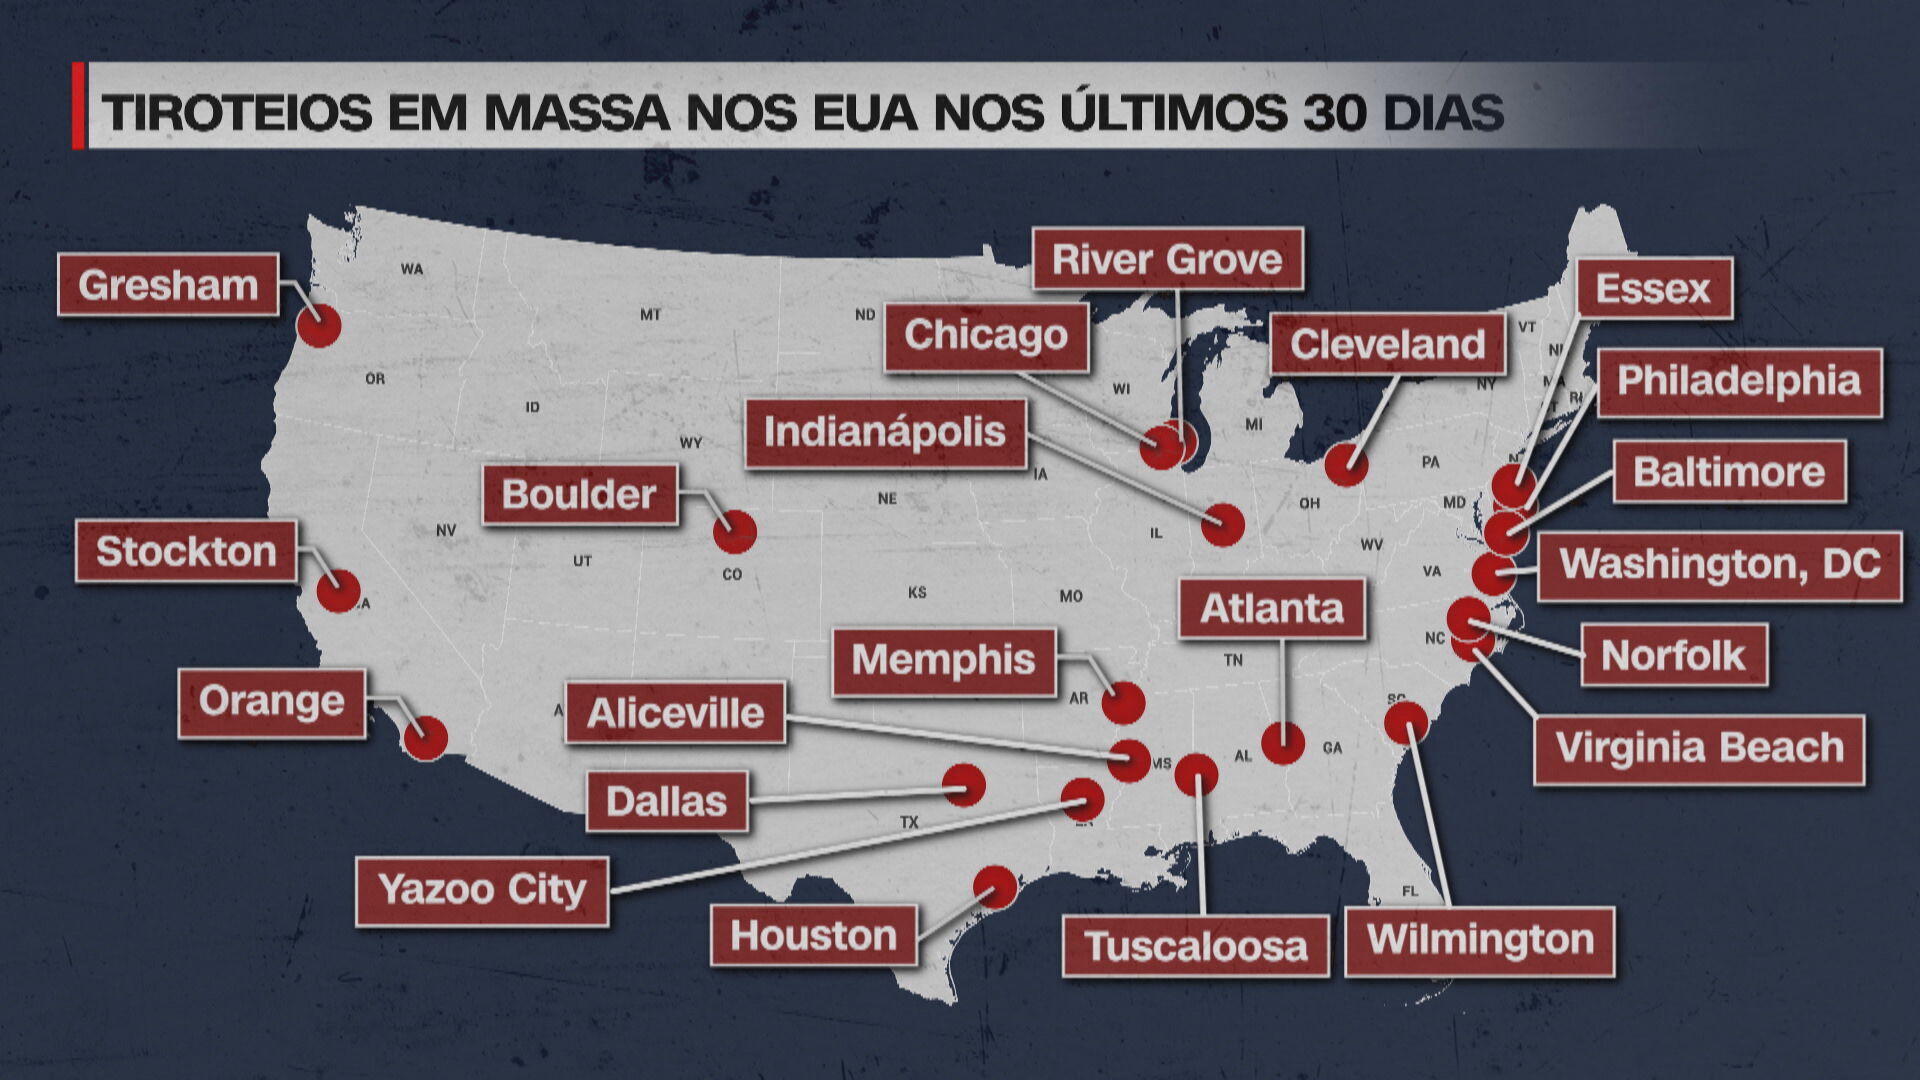 Mapa com o tiroteios em massa nos EUA nos últimos 30 dias